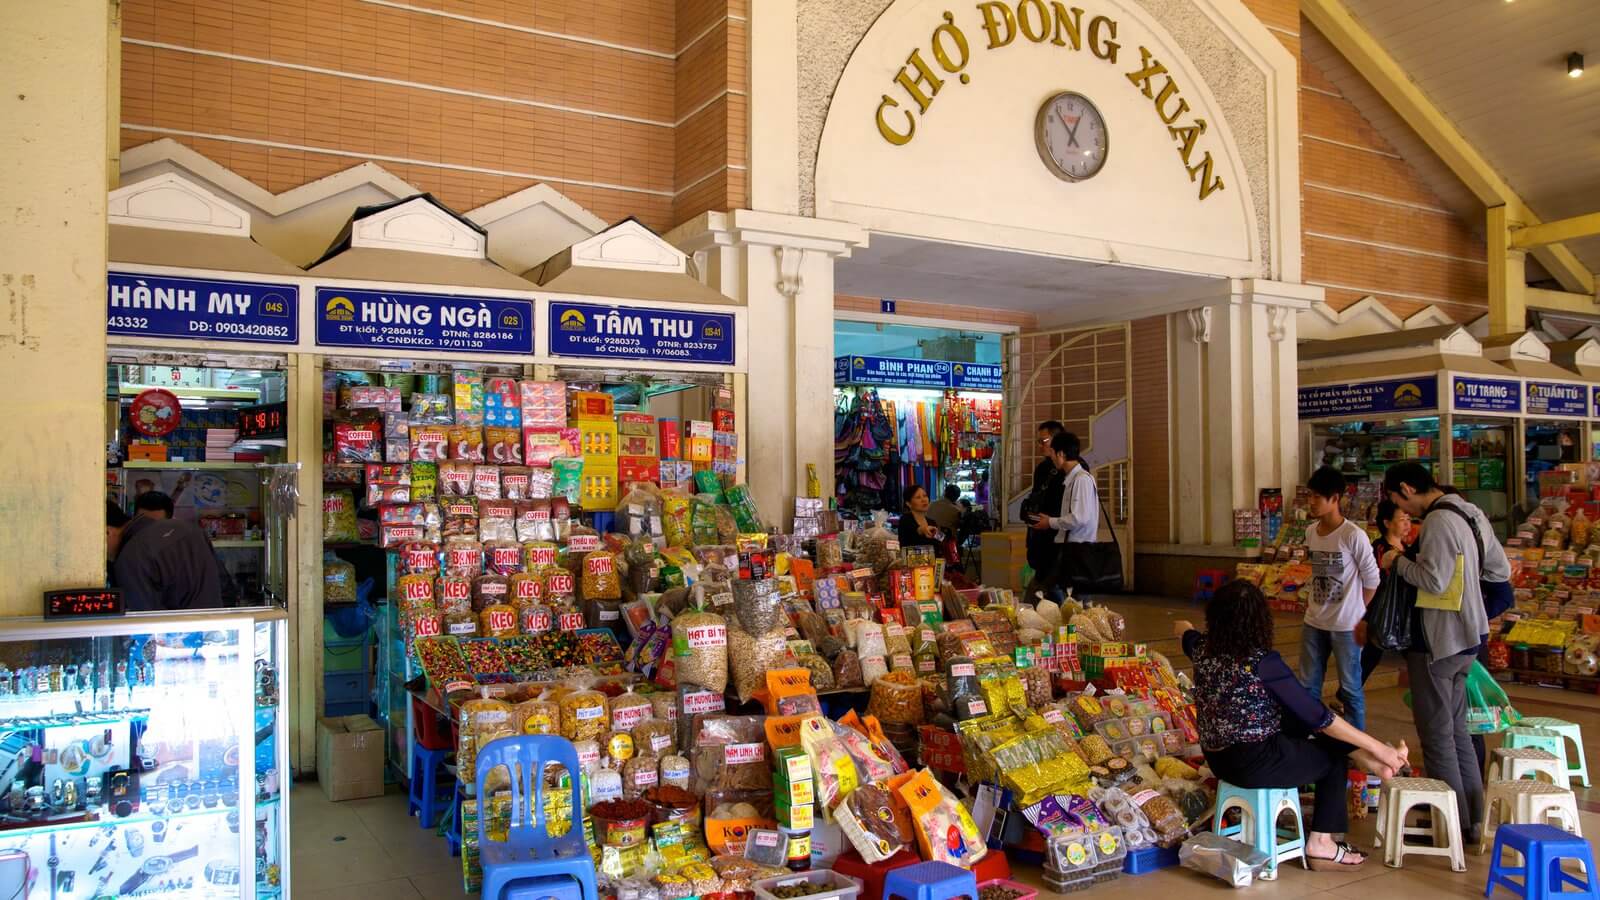 Chợ Đồng Xuân địa điểm tham quan mua sắm ở Hà Nội (ảnh sưu tầm)